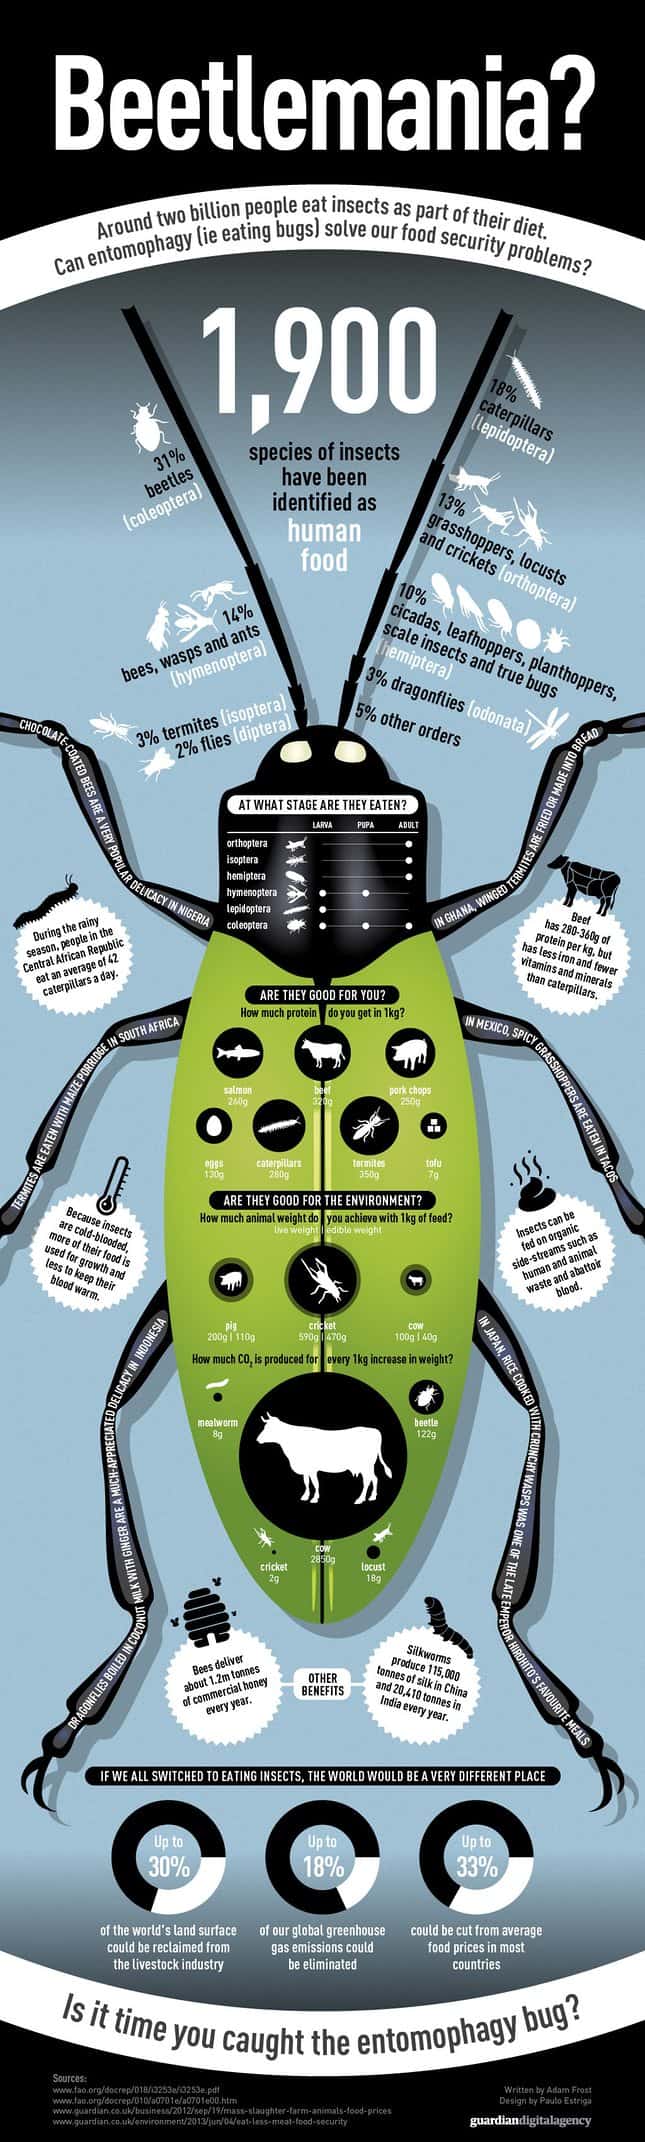 Beetlemania Infographic